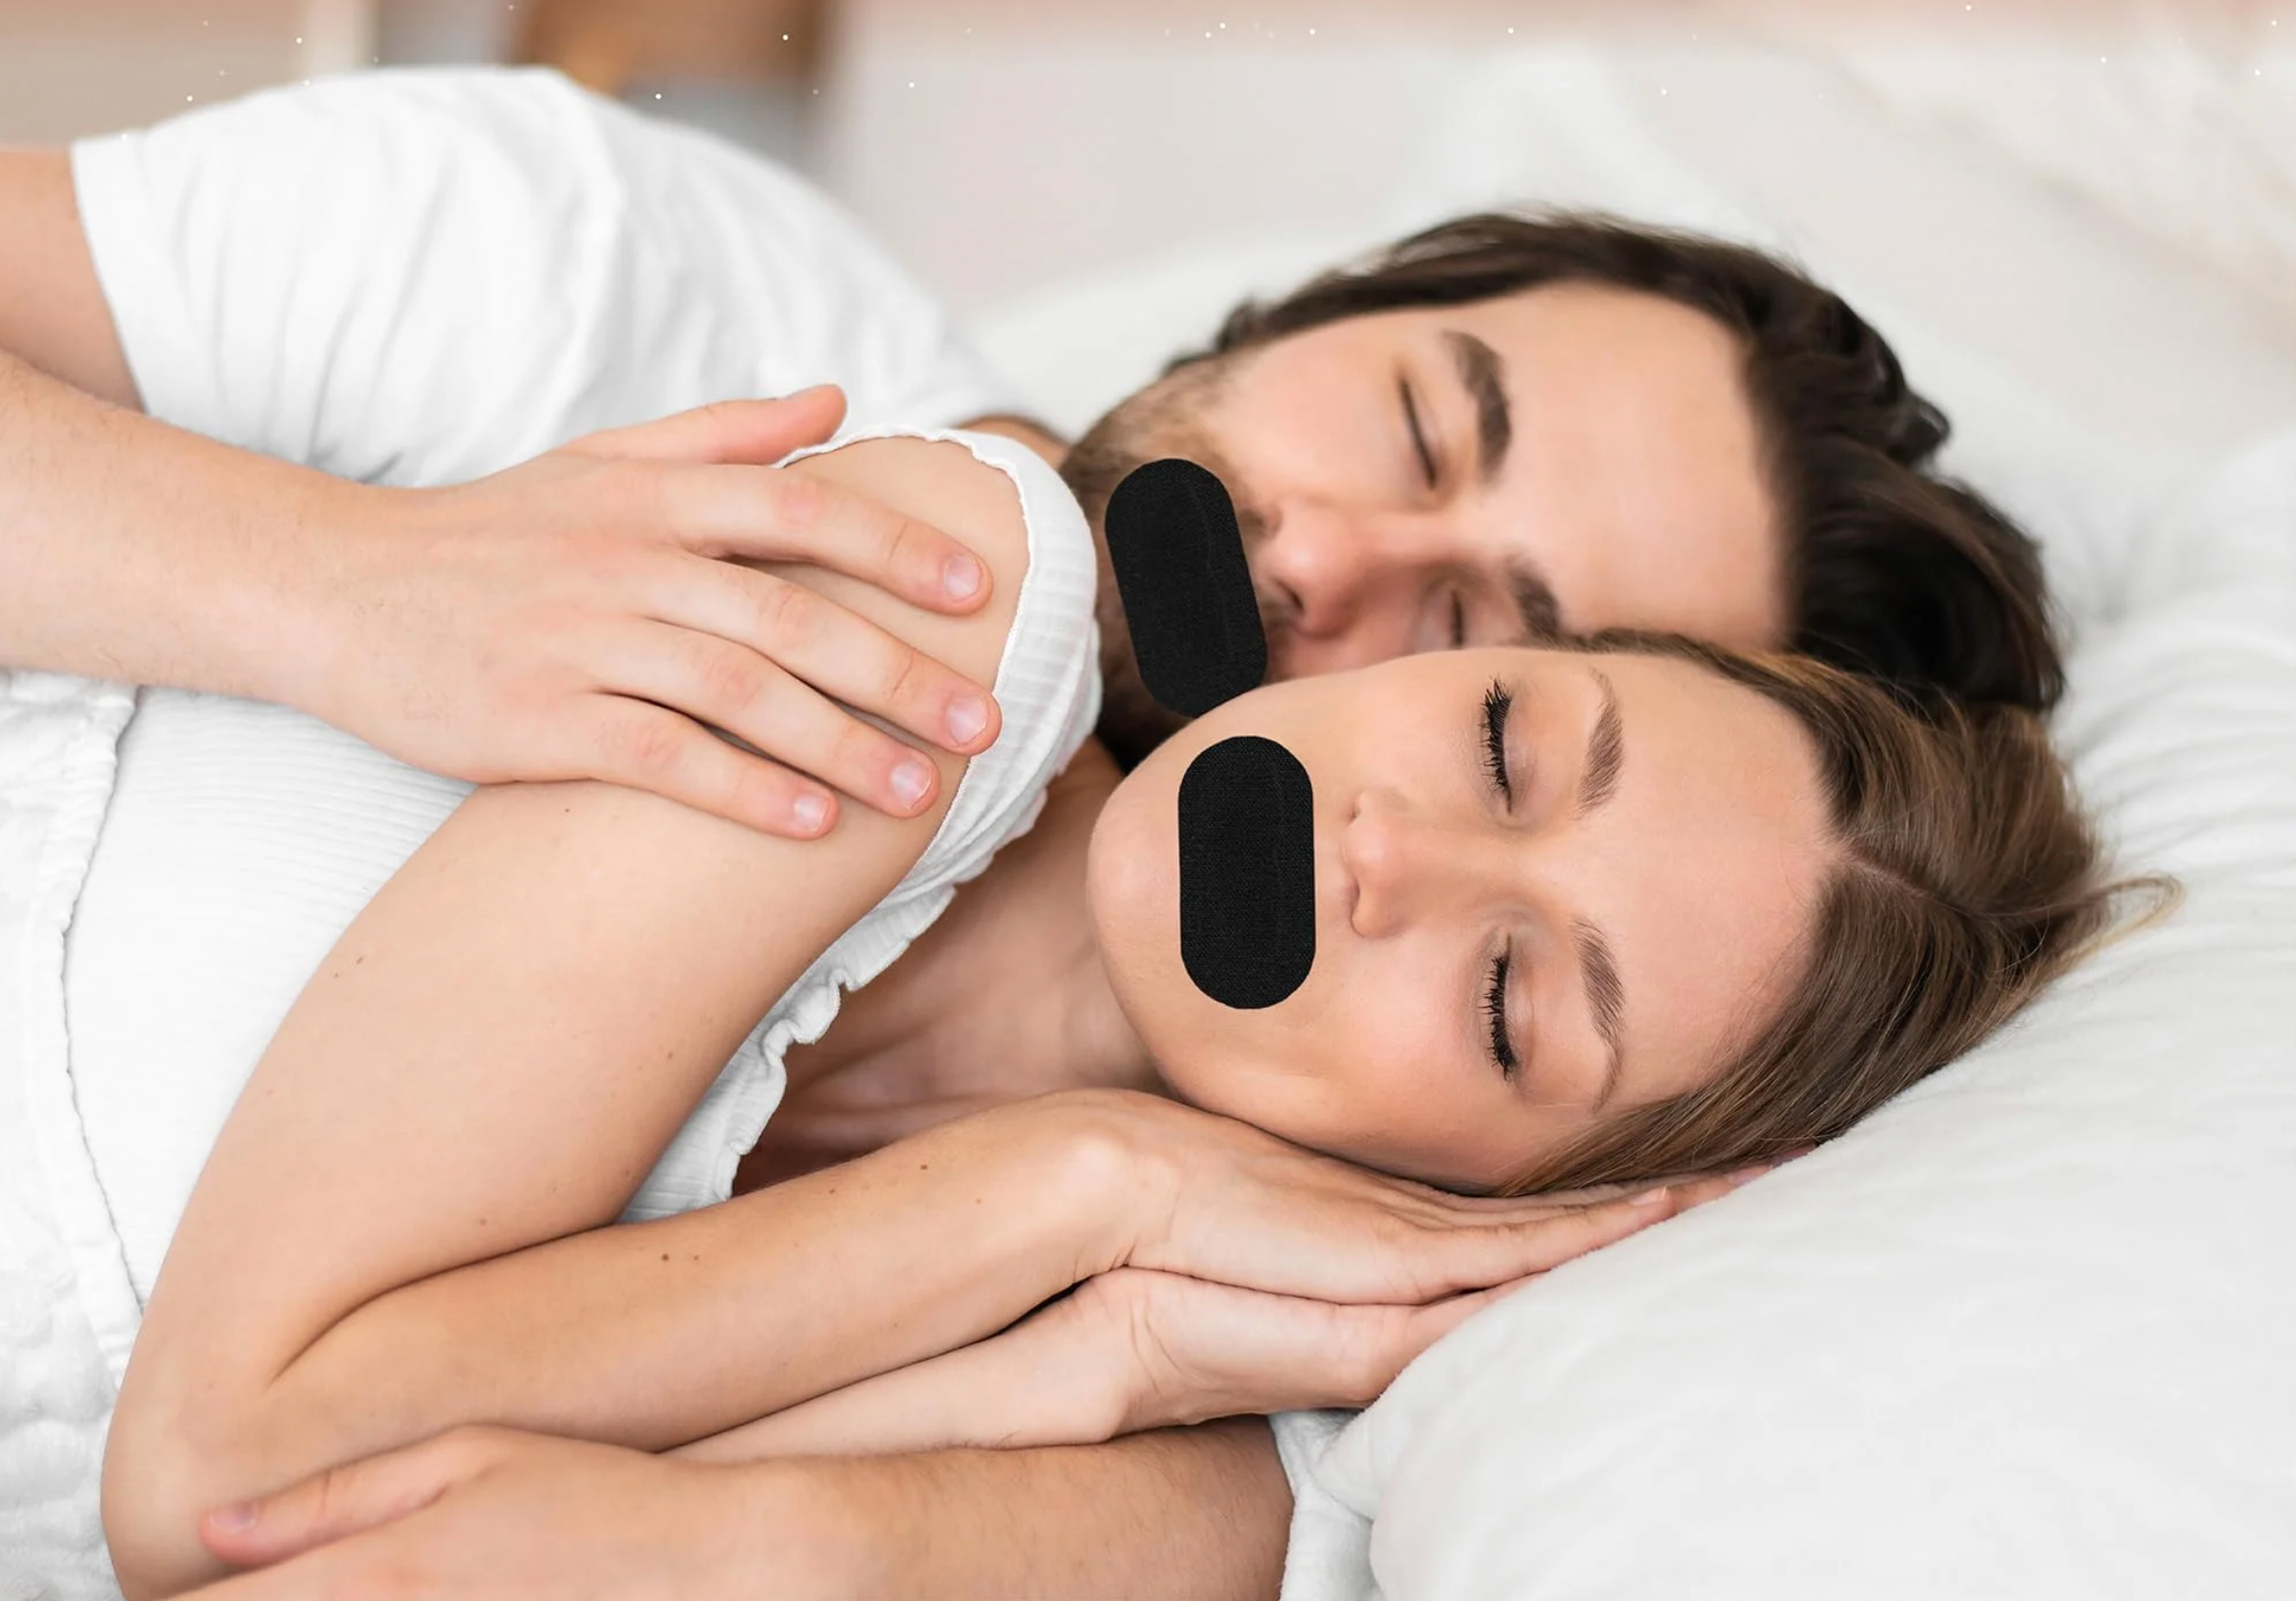 En mann og en kvinne sover tett med sort munntape på mens de ligger i en hvit seng